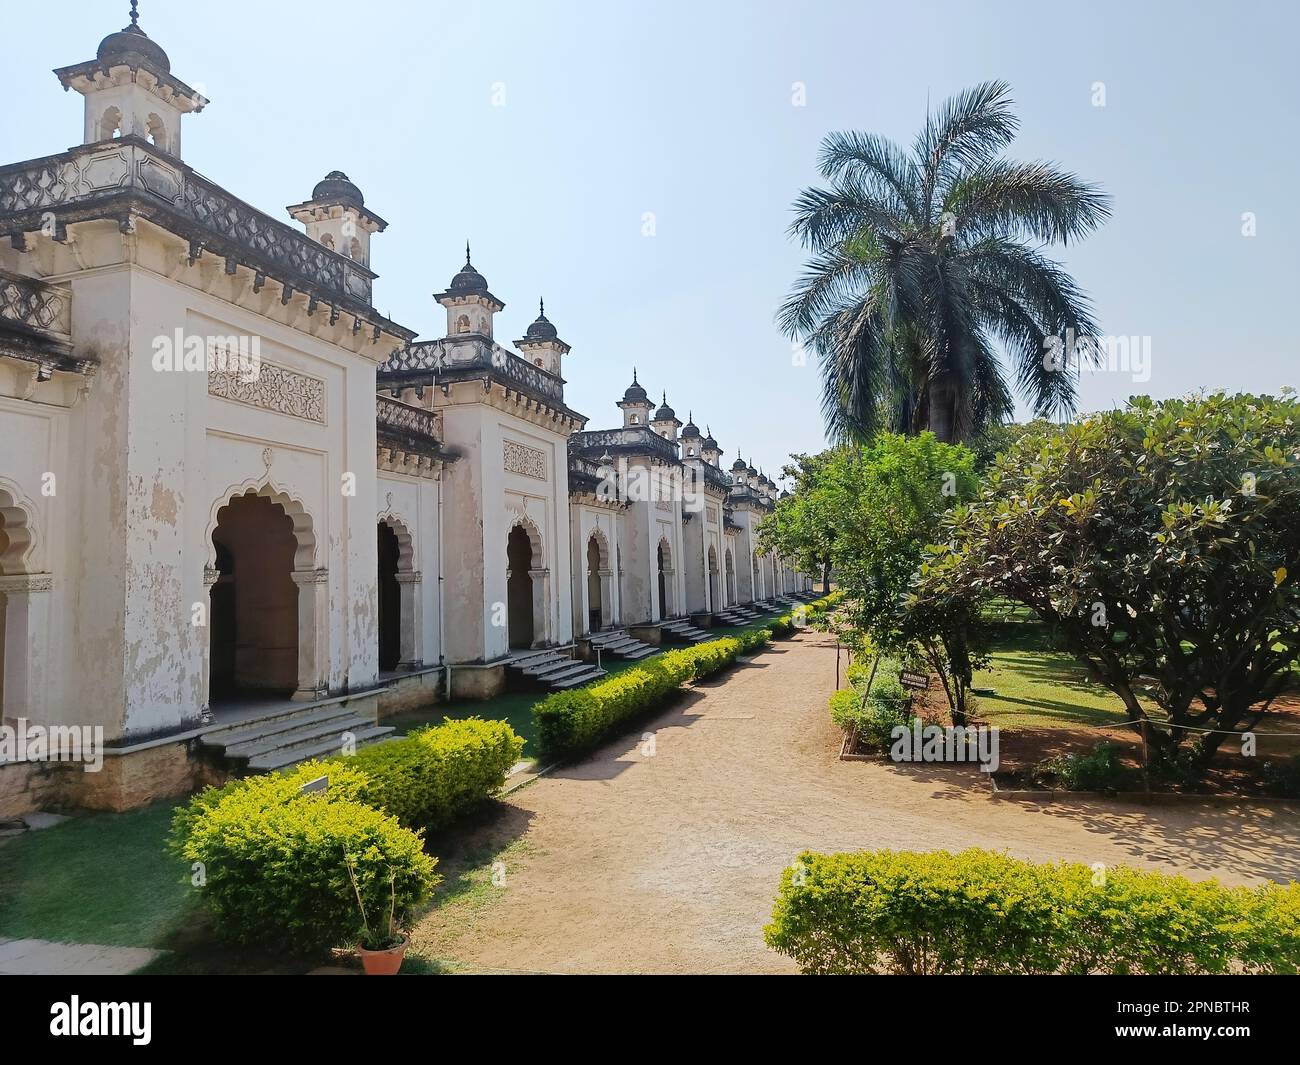 Il Palazzo di Chowmahalla a Hyderabad, in India, presenta uno splendido esempio di architettura reale, caratterizzata da una miscela di St. Europee, Mughal e Indo-Islamiche Foto Stock